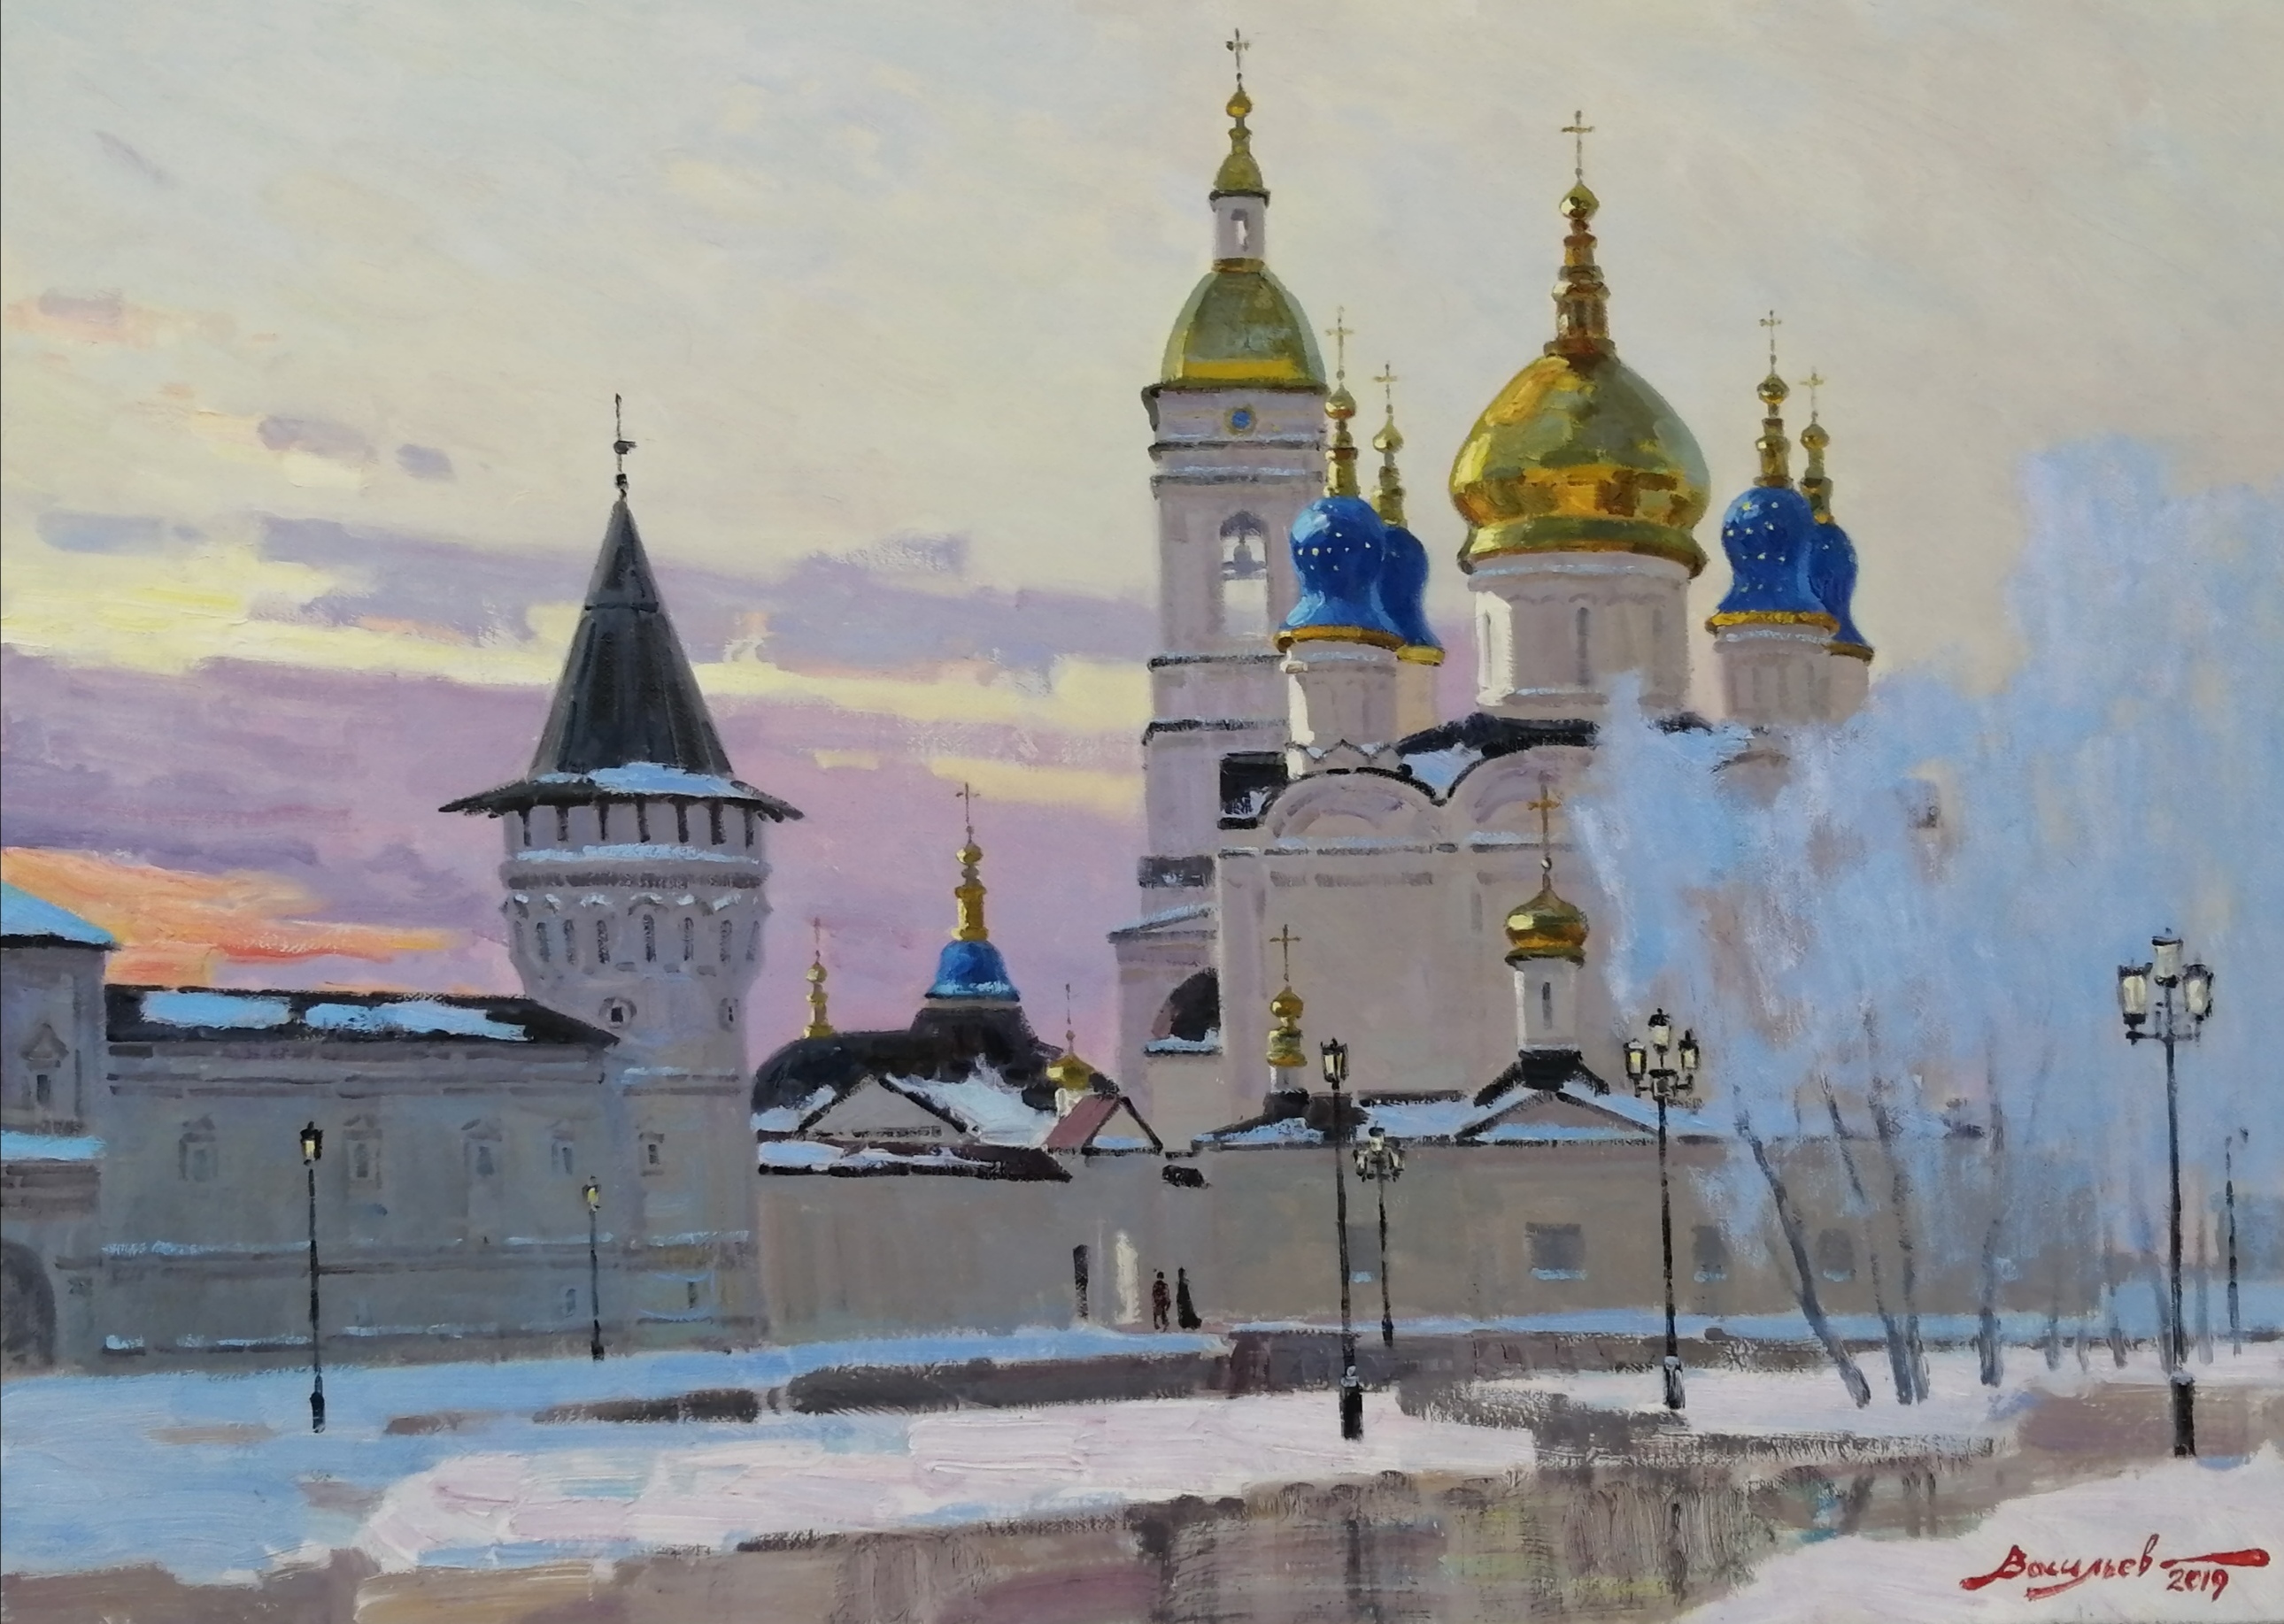 Morning in Tobolsk - 1, Dmitry Vasiliev, Buy the painting Oil